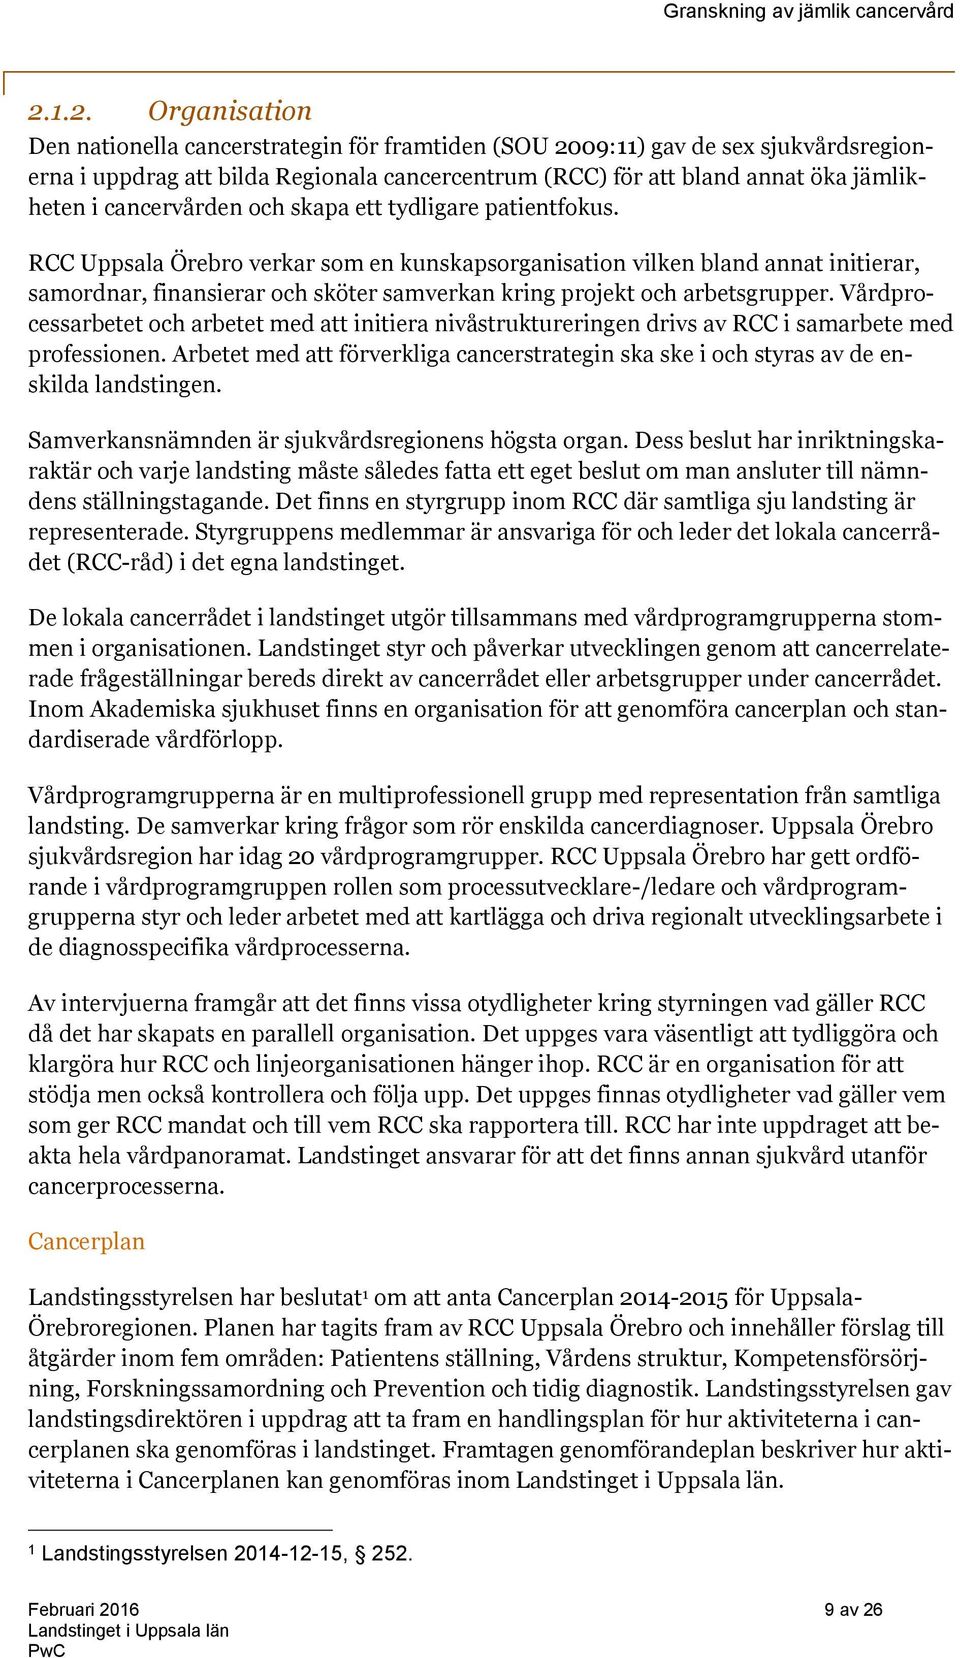 RCC Uppsala Örebro verkar som en kunskapsorganisation vilken bland annat initierar, samordnar, finansierar och sköter samverkan kring projekt och arbetsgrupper.